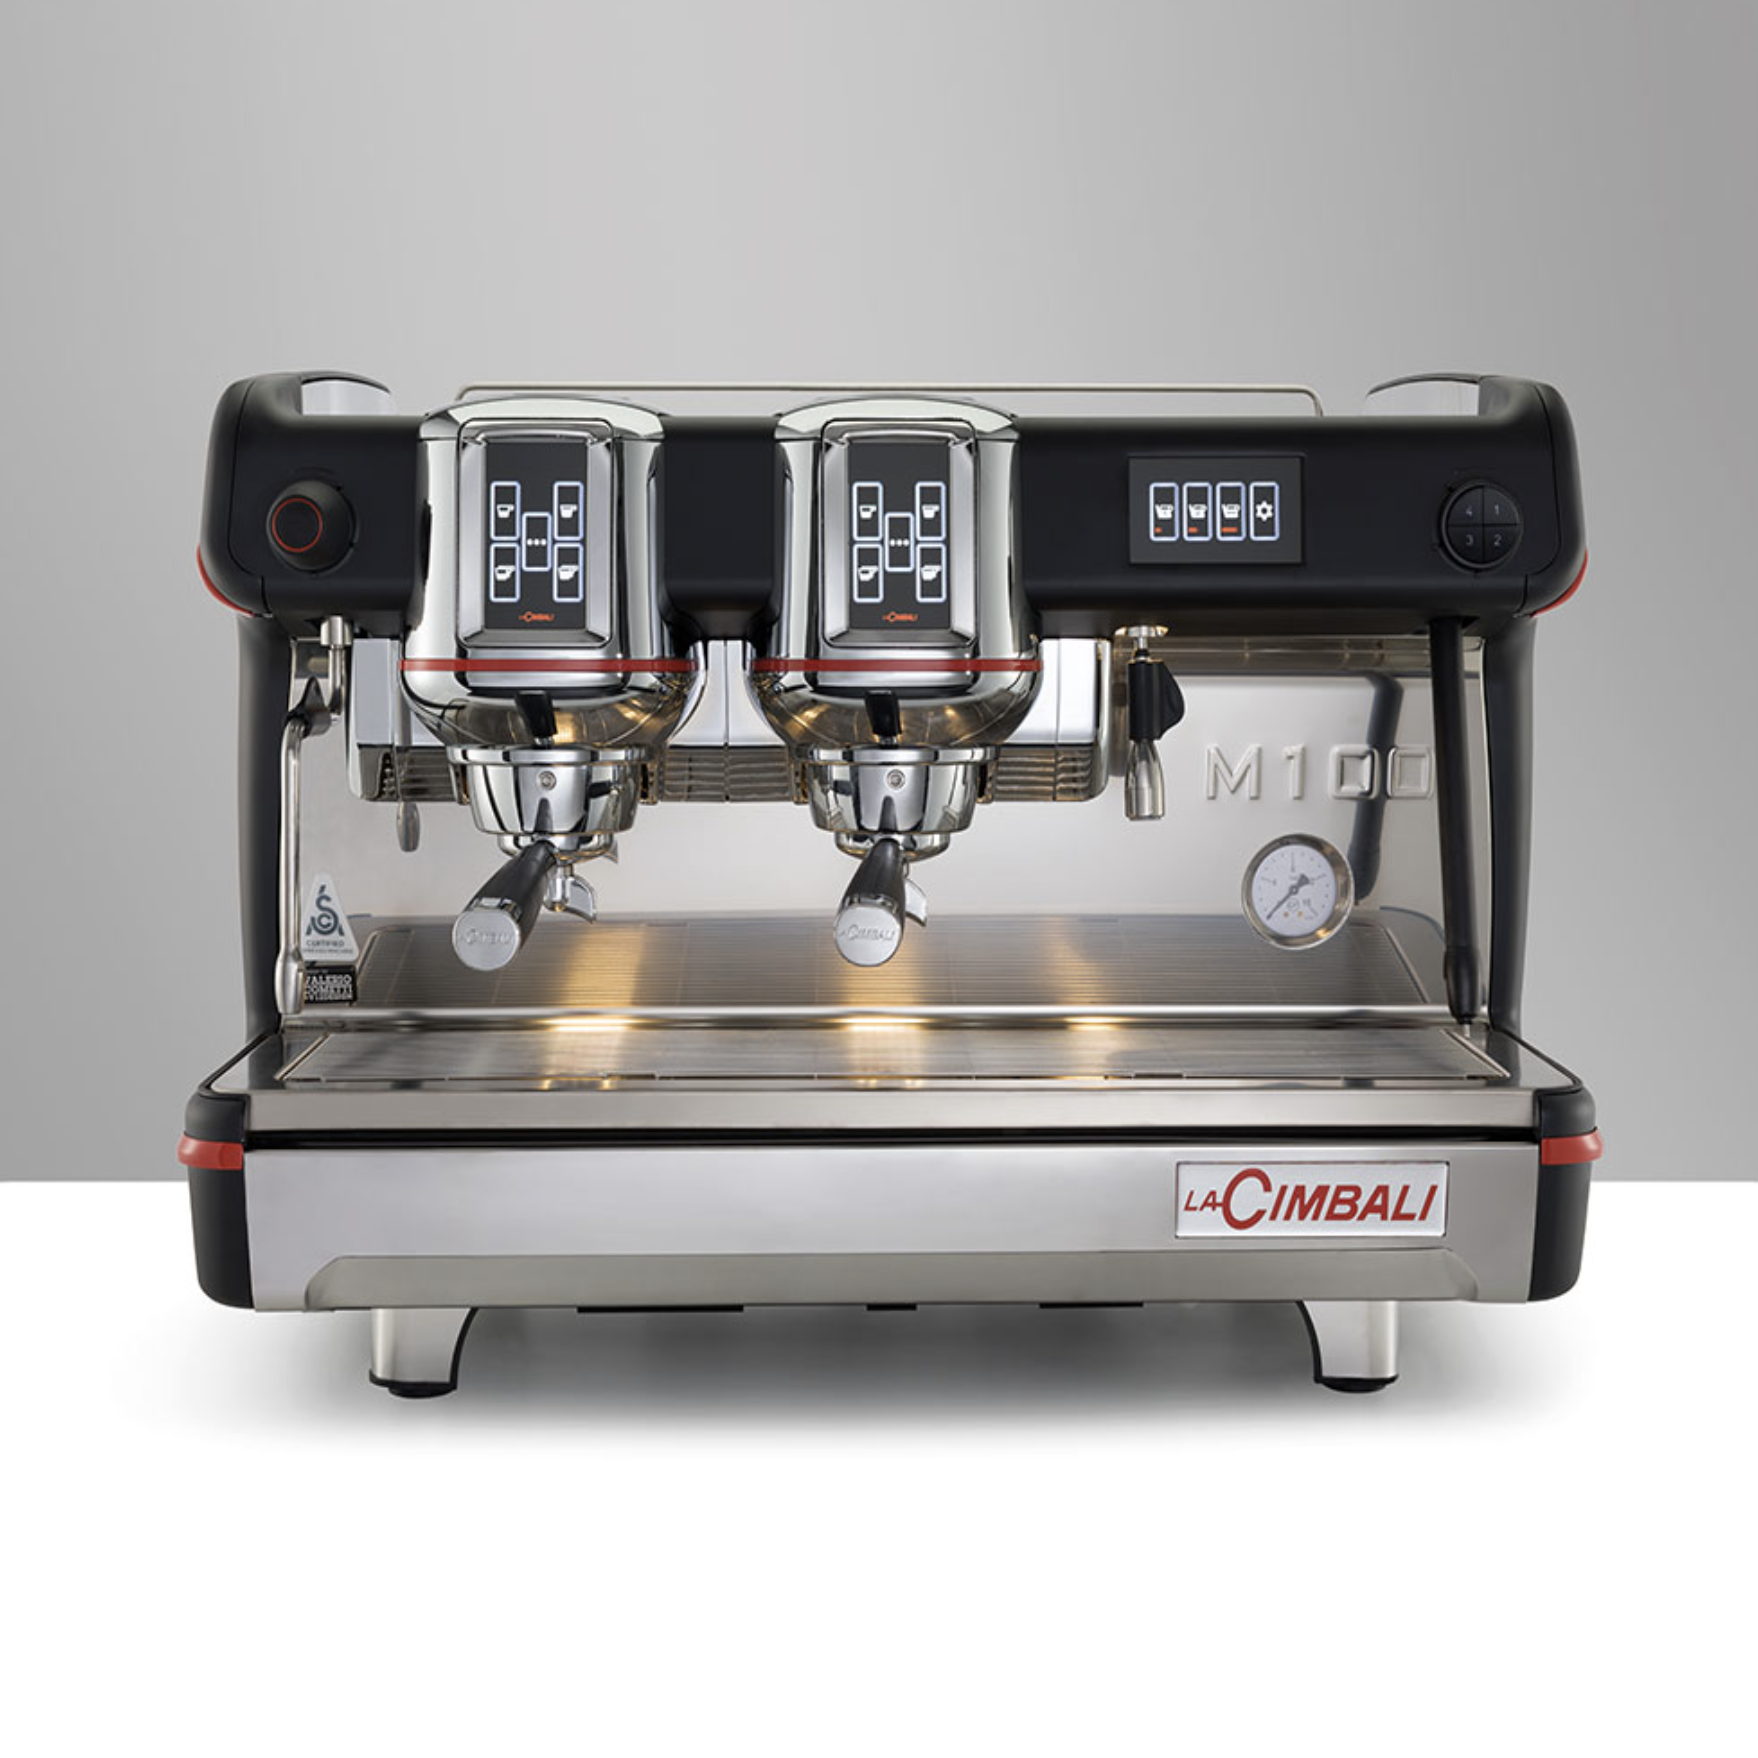 La Cimbali M100 Attiva DT2 touch espresso machine